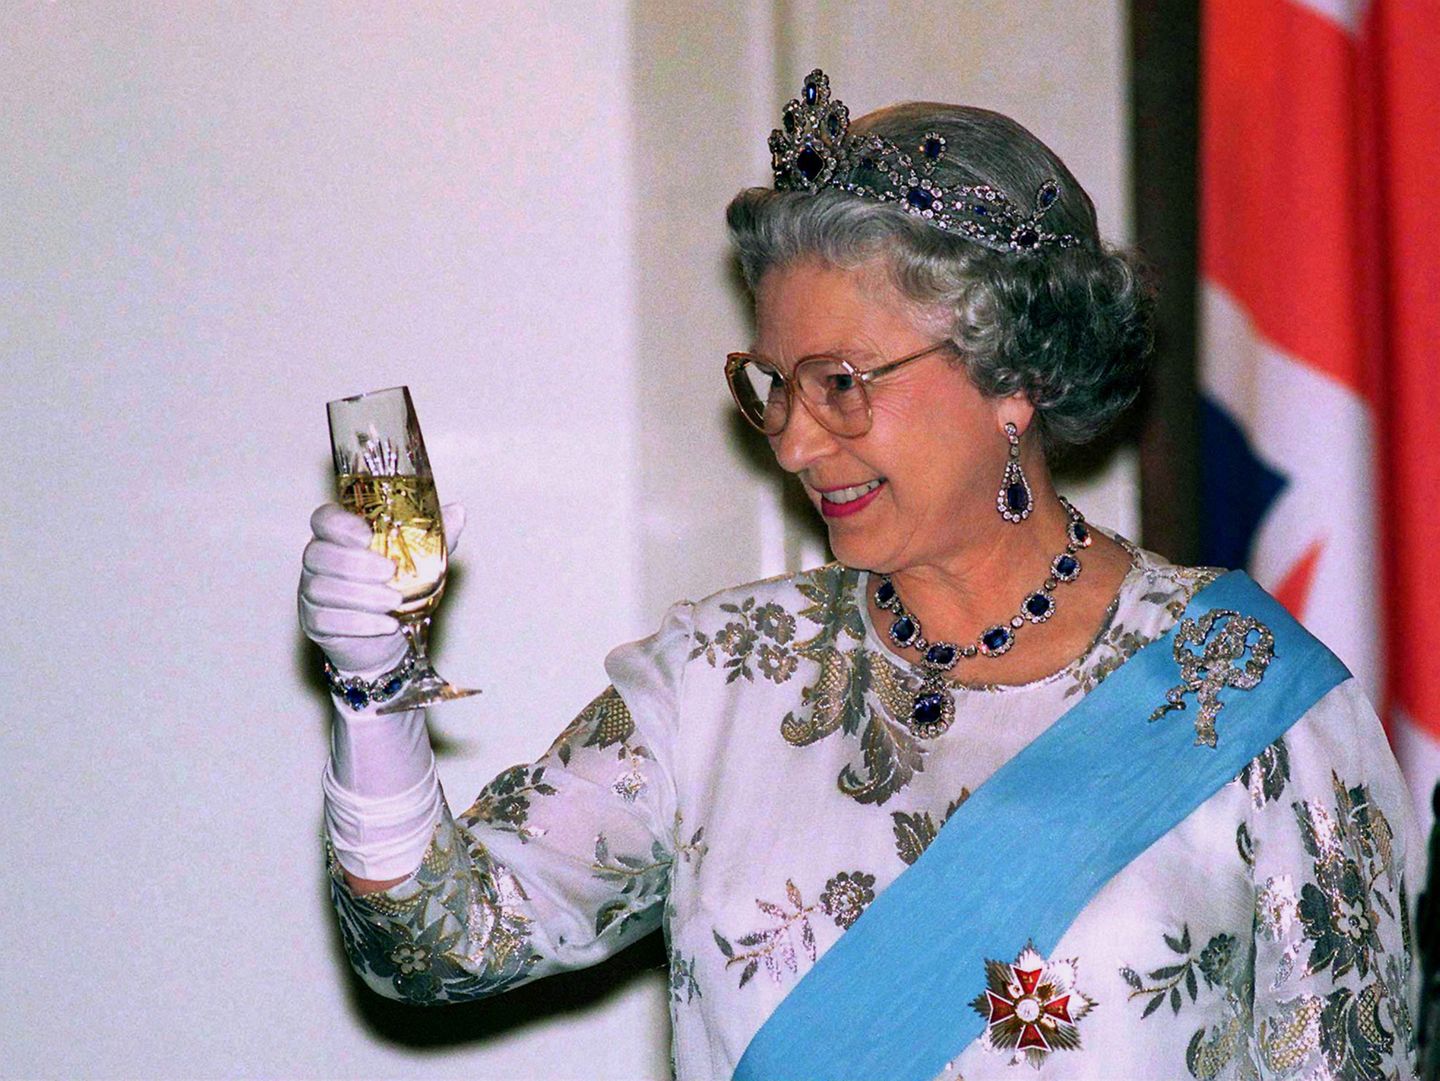 Weihnachten bei den Windsors: Königin Elisabeth mit Glas